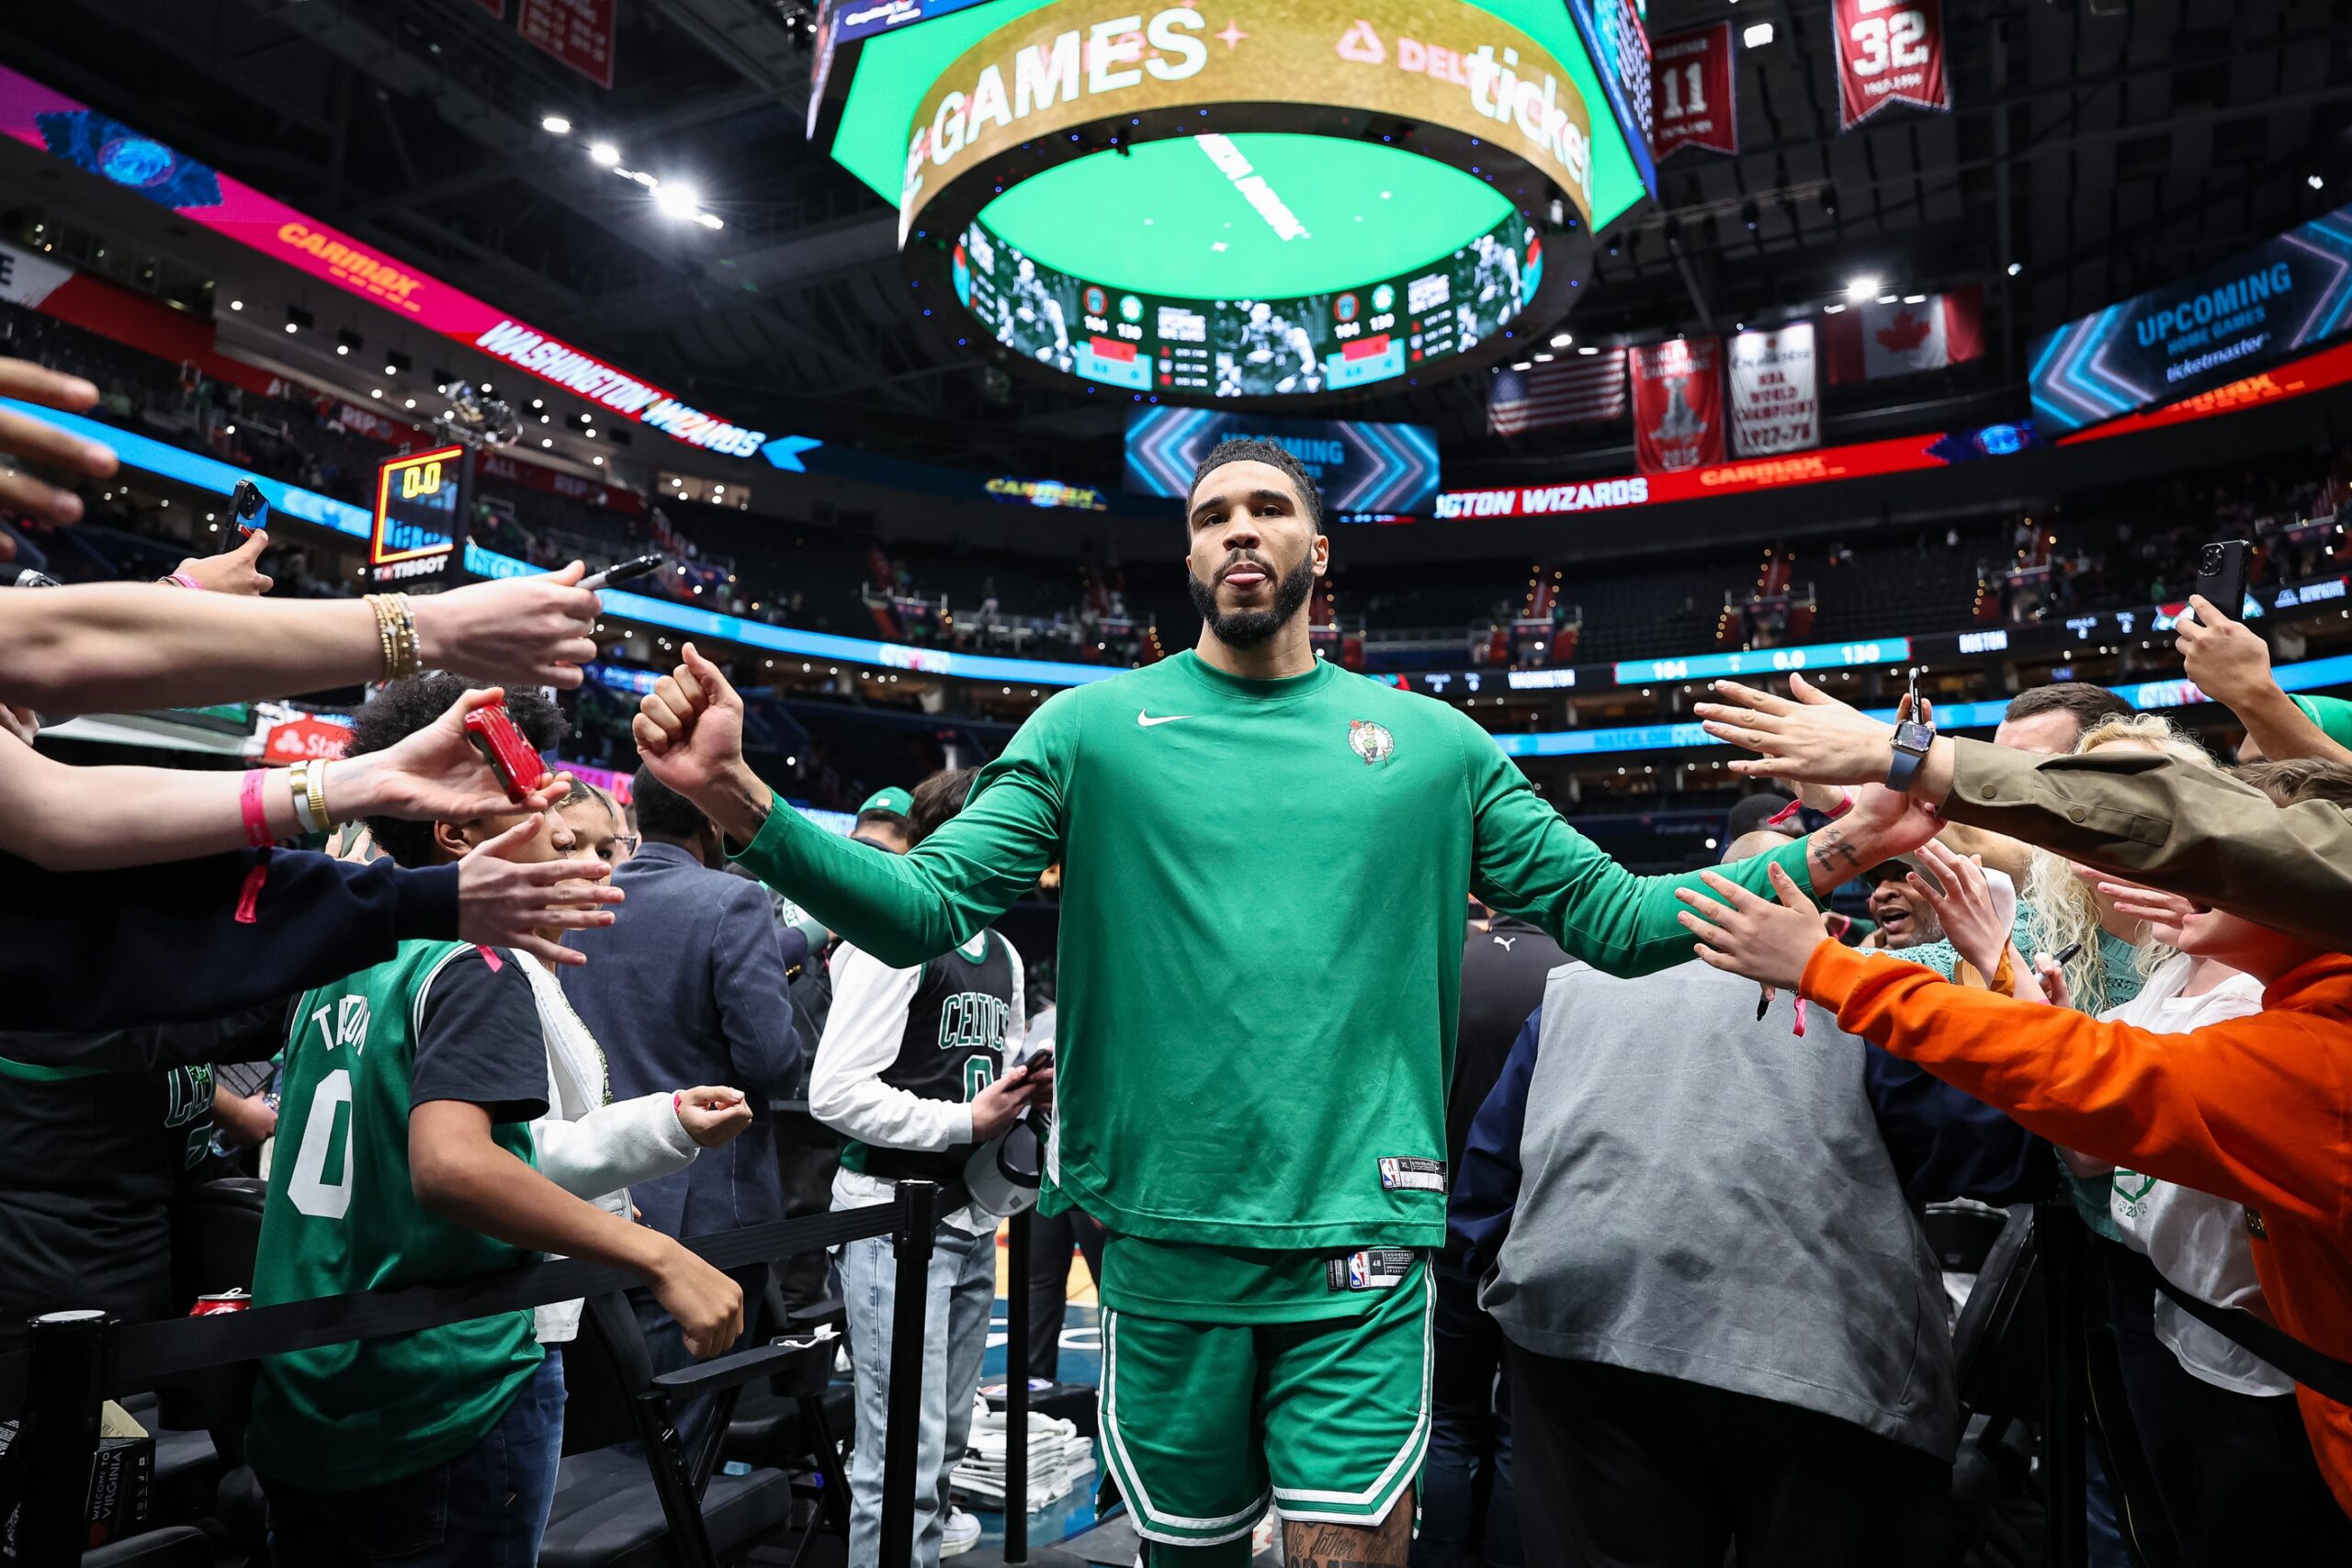 Boston Celtics